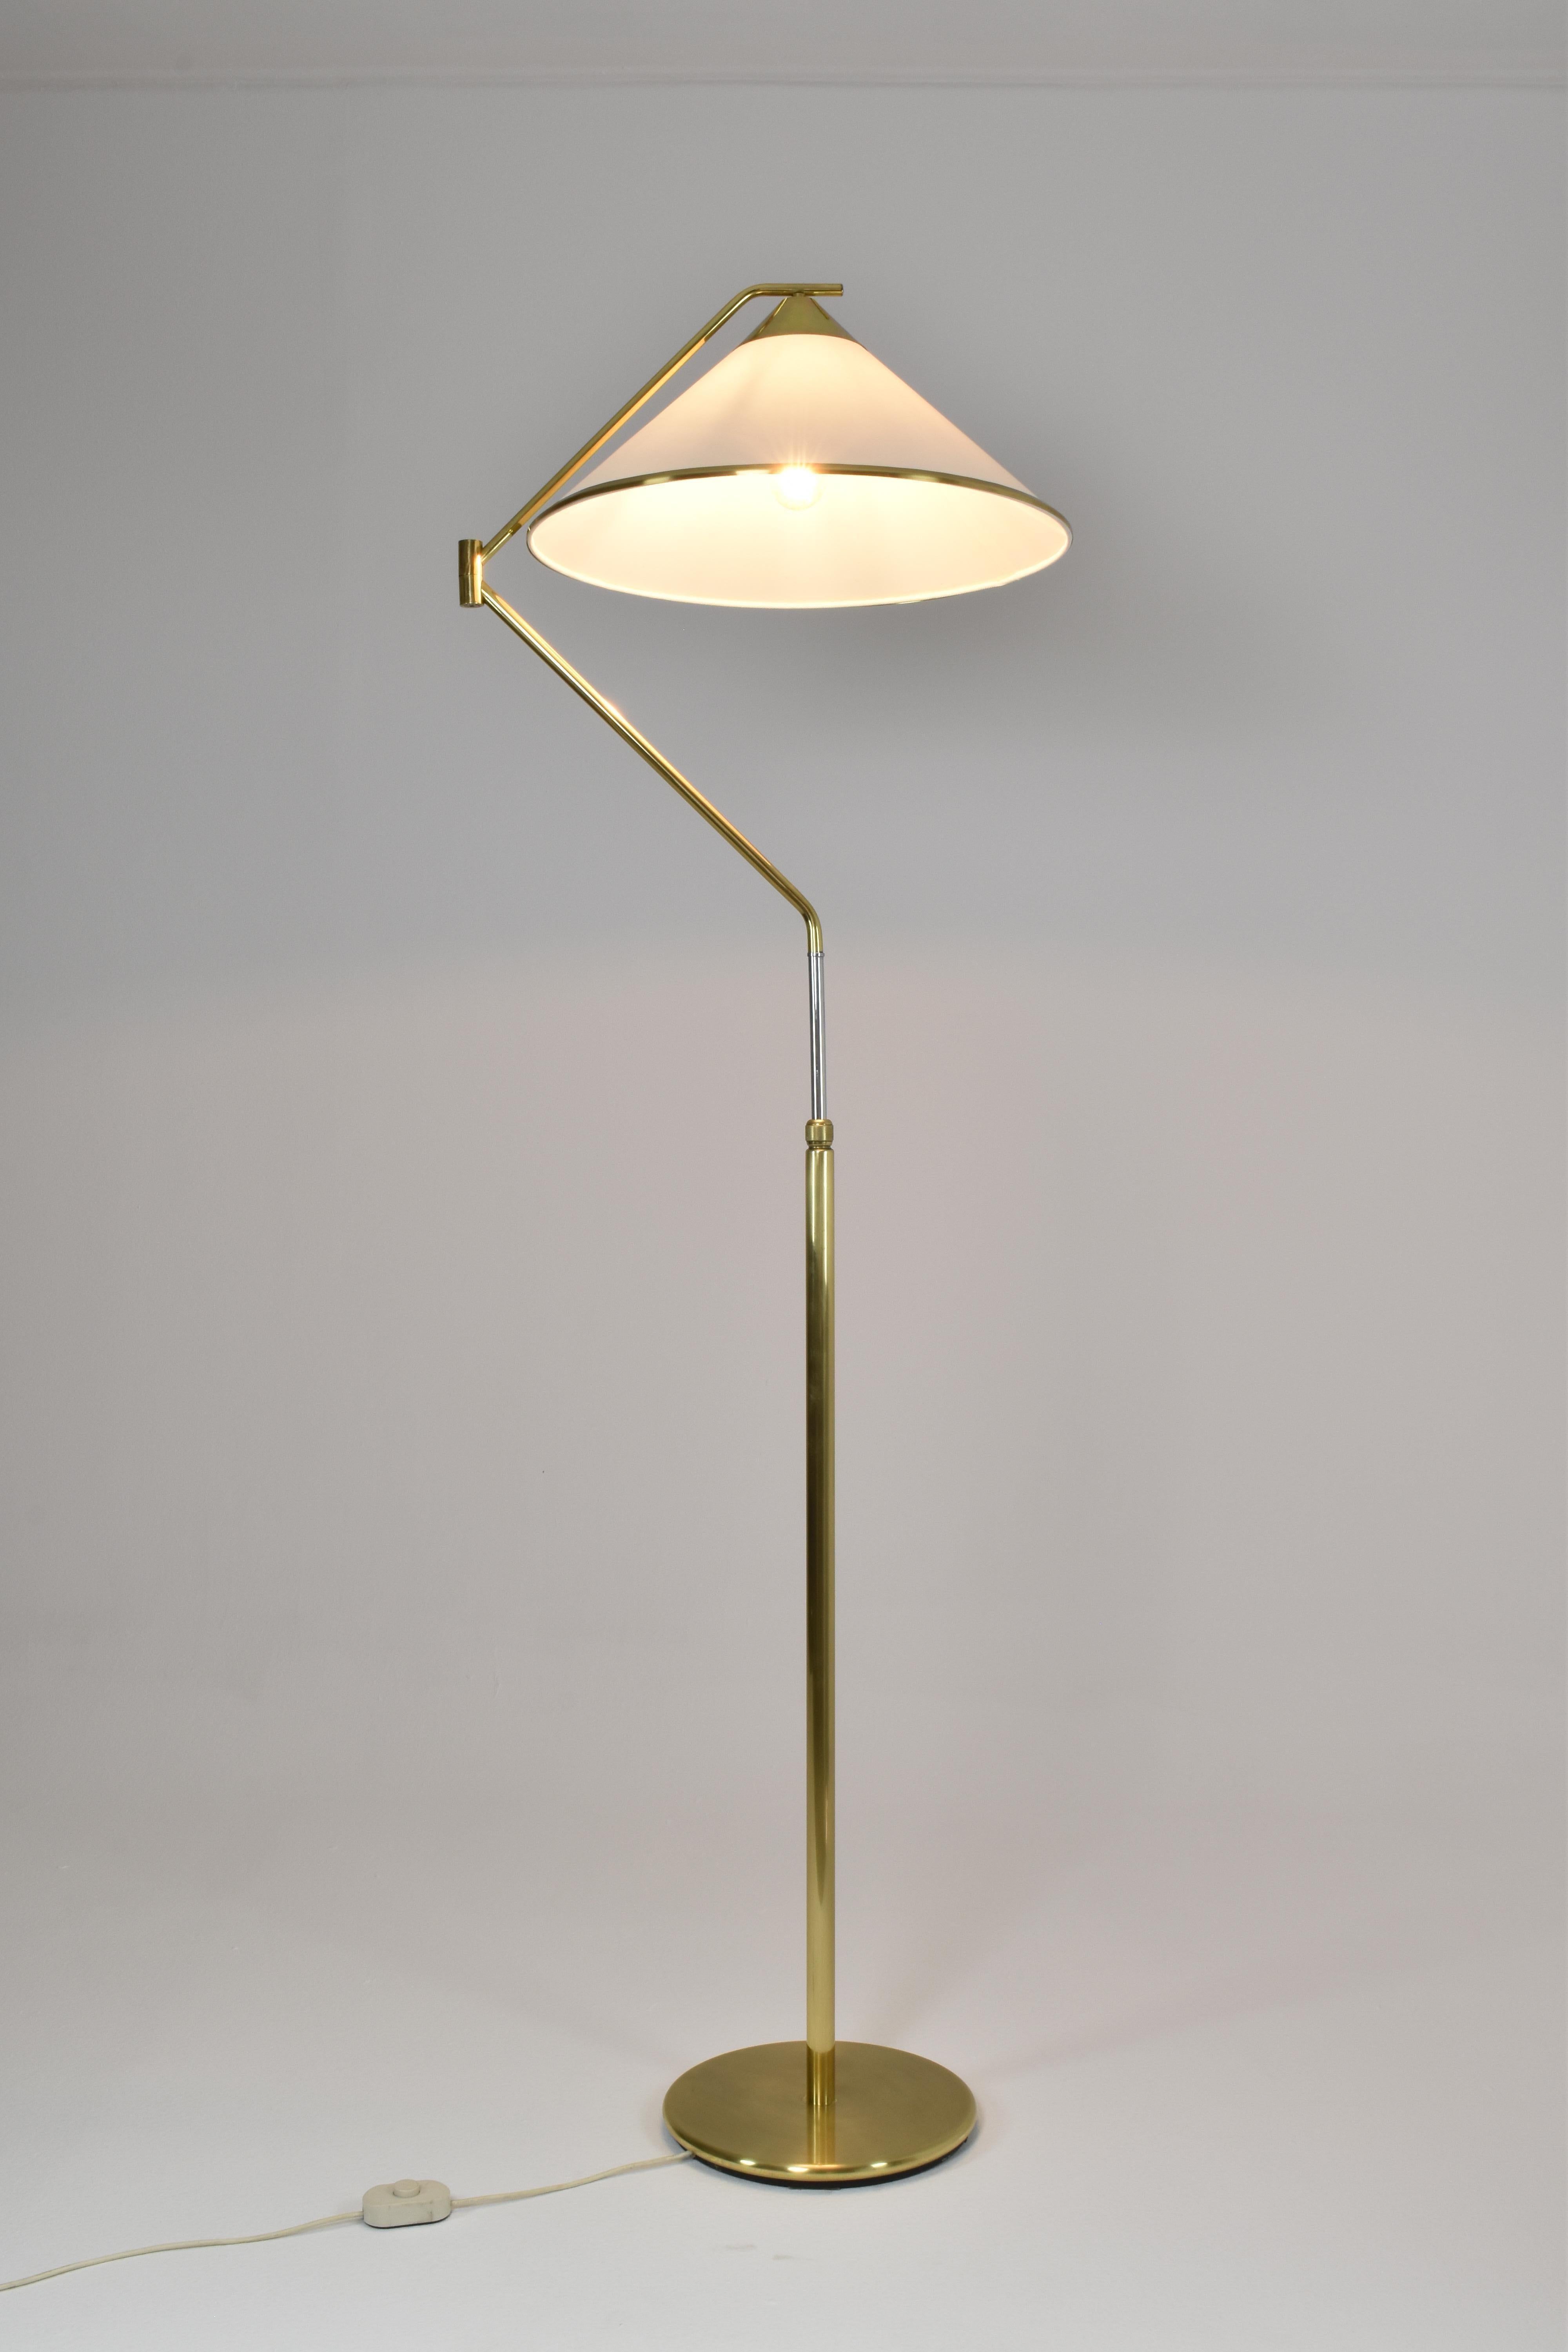 Italienische Stehlampe aus Messing von Arredoluce Monza aus den 1940er Jahren  (20. Jahrhundert)